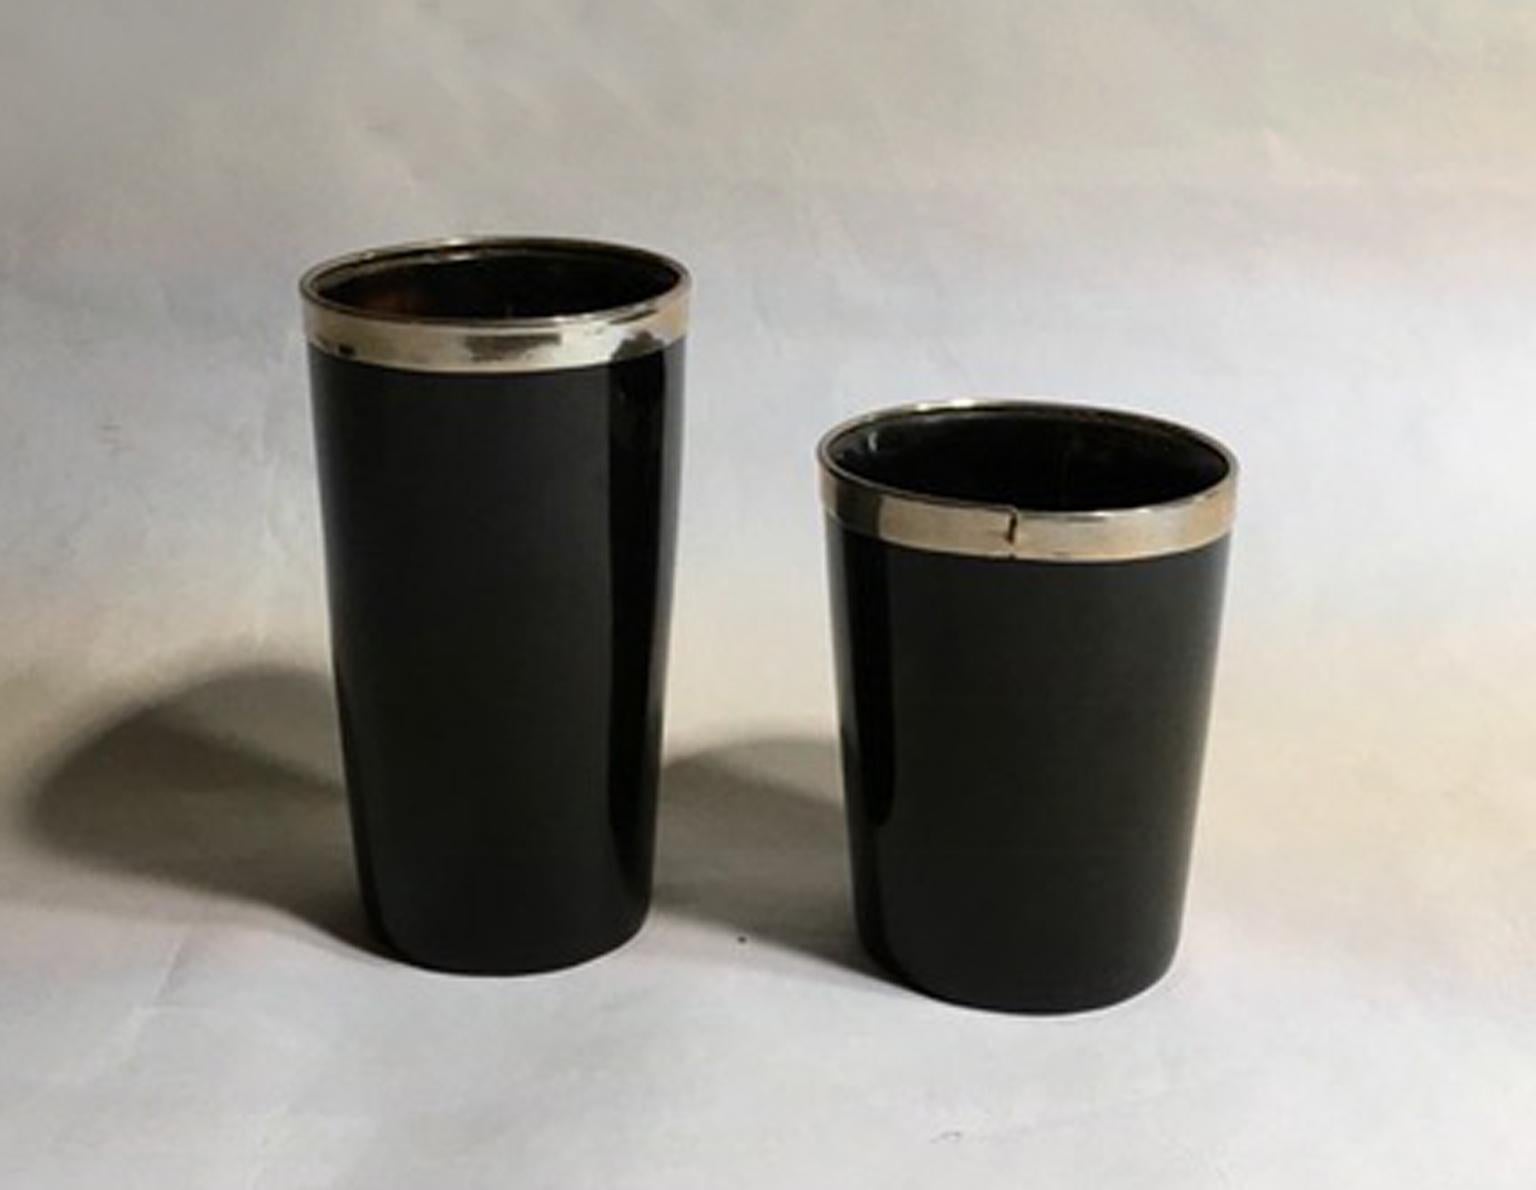 Italie ensemble de deux bols en fausse corne noire et métal chromé dans une production contemporaine de style montagne.

Ensemble de deux objets très décoratifs qui rappellent le style montagnard. Le matériau noir imite la corne.